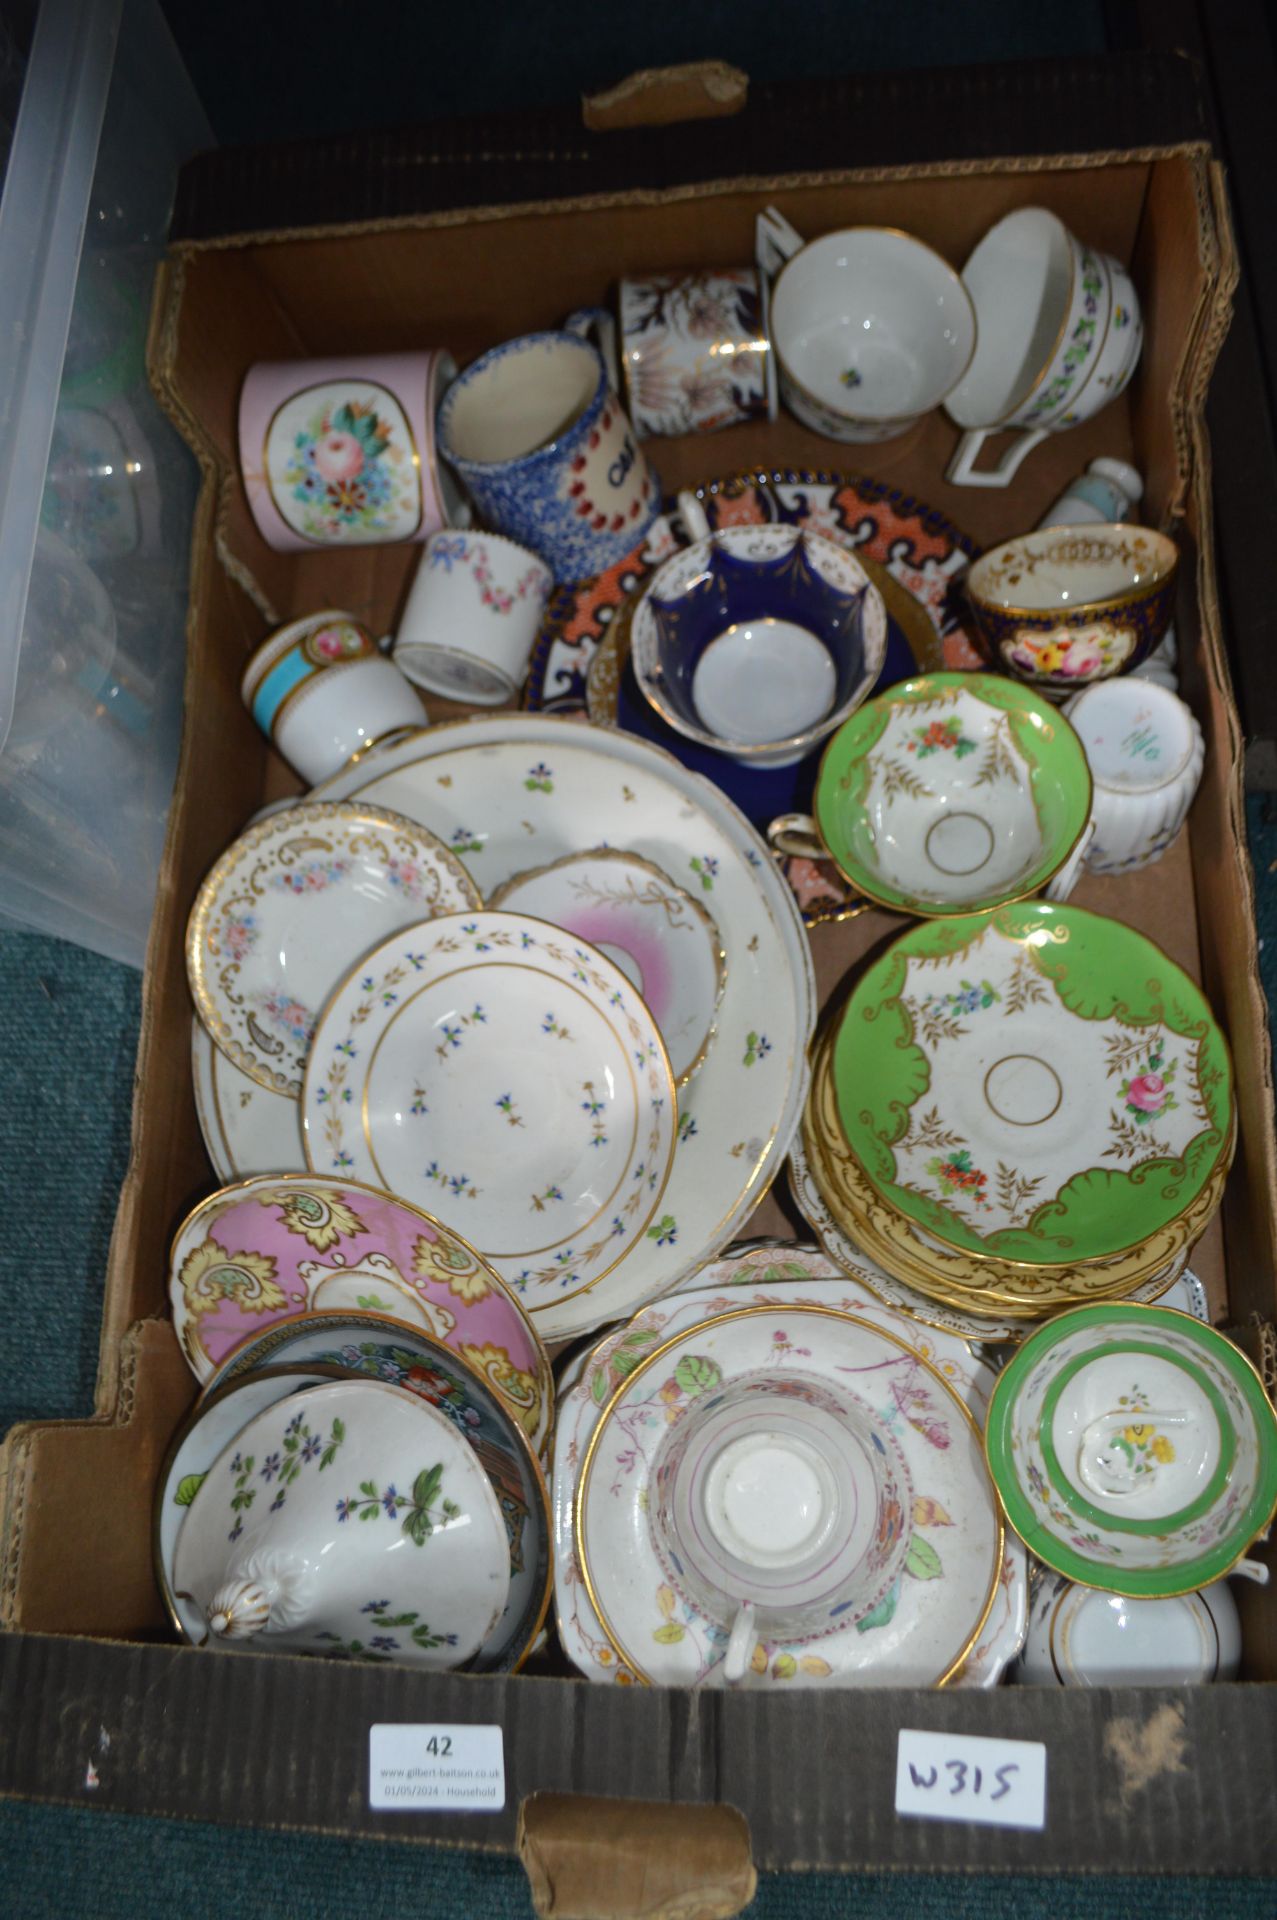 Vintage Tableware, Cups, Saucers, etc.